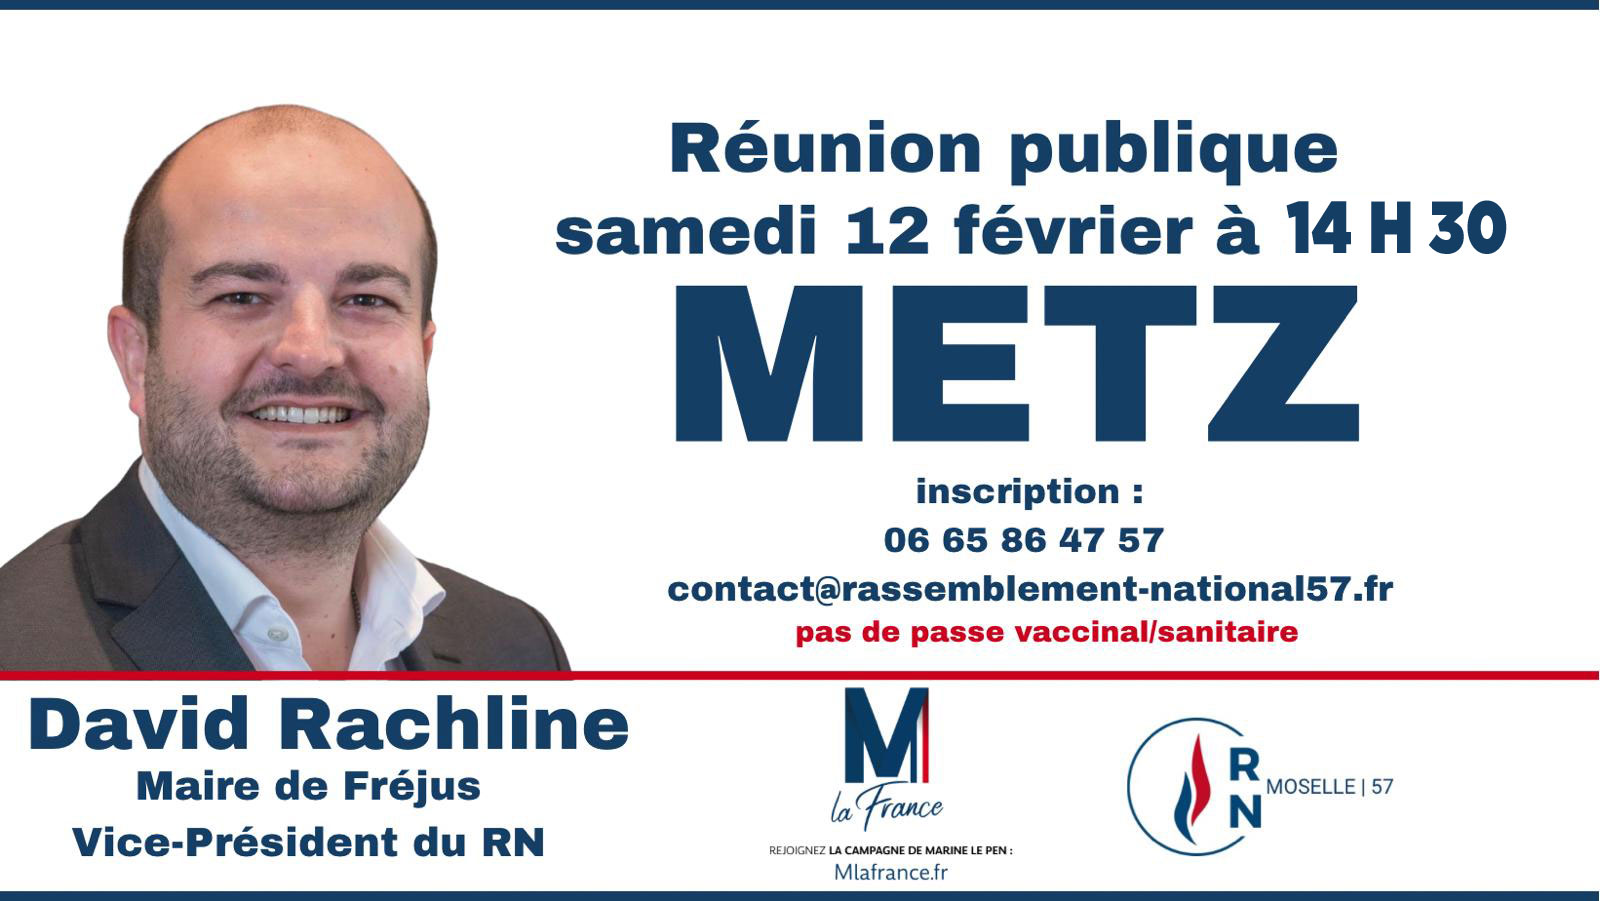 Réunion Publique du 12 février 2022 à Metz avec David Rachline